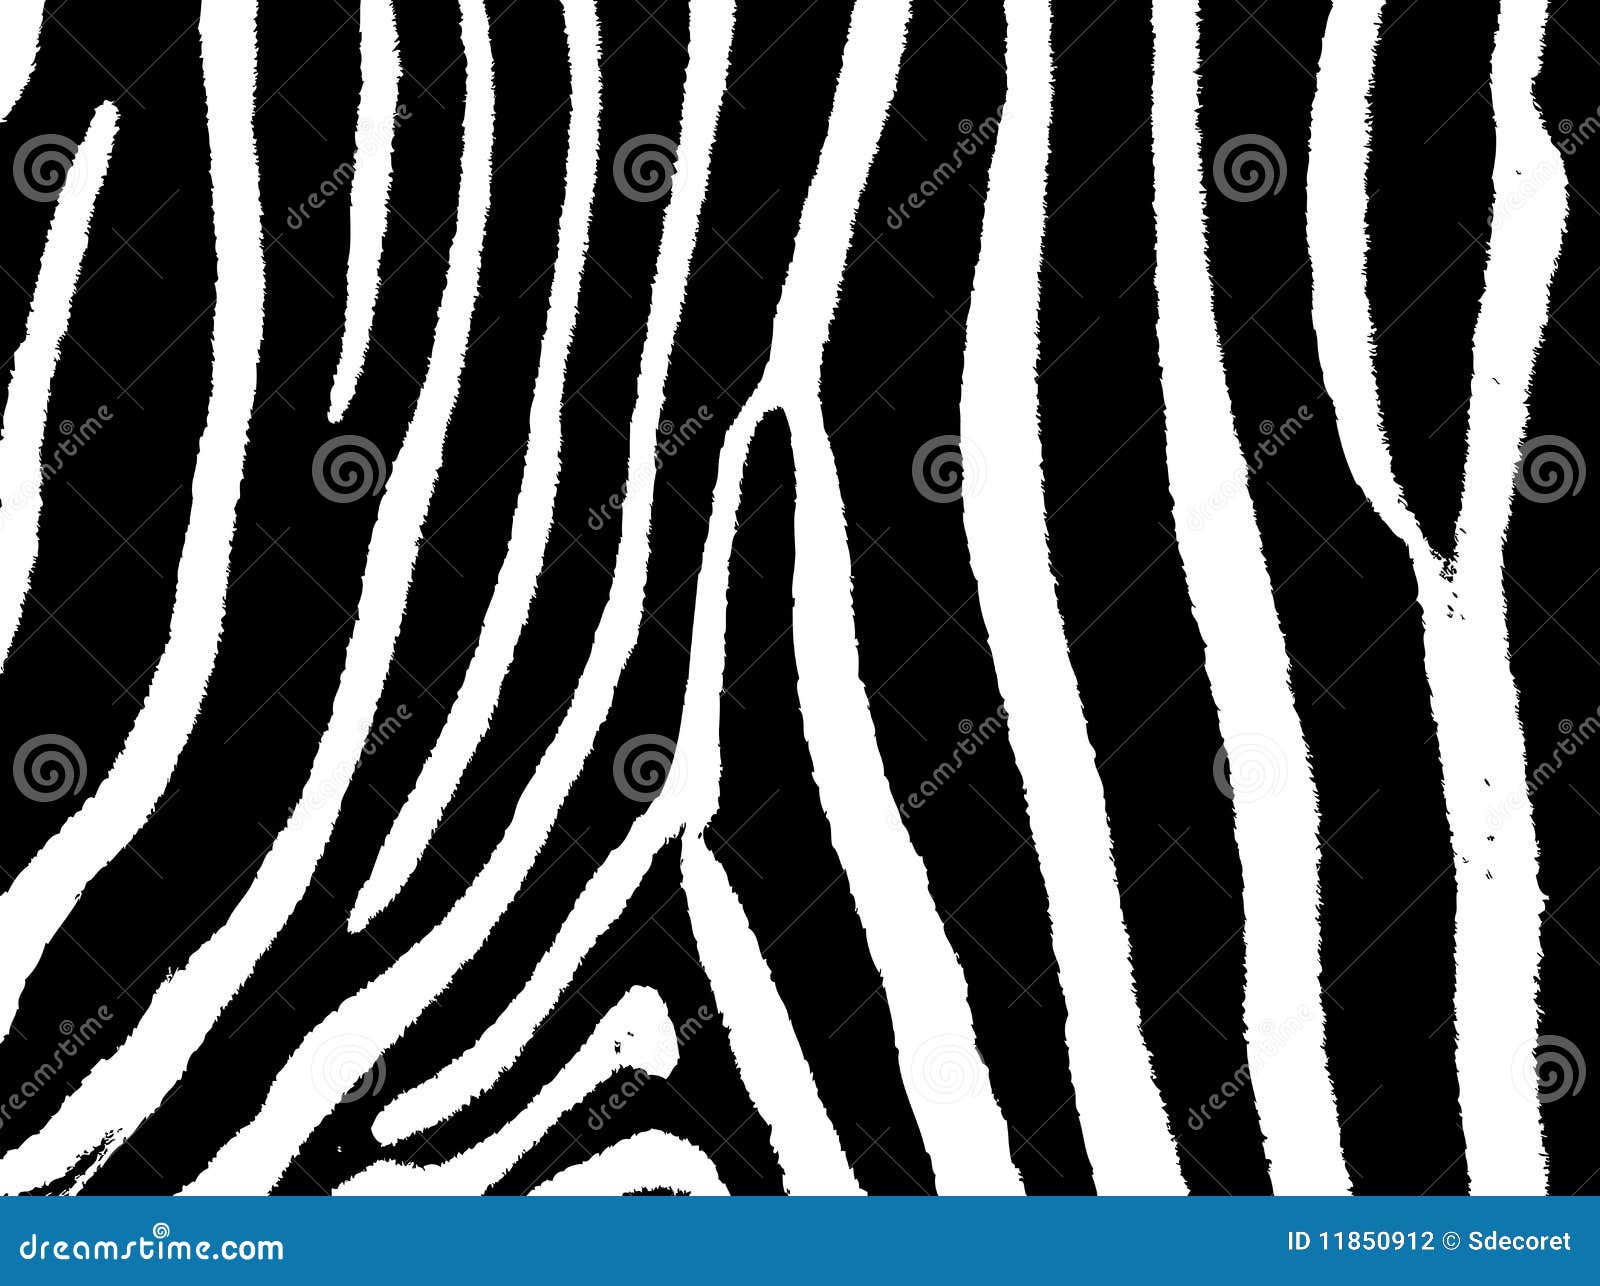 Seamless zebra skin pattern fur print